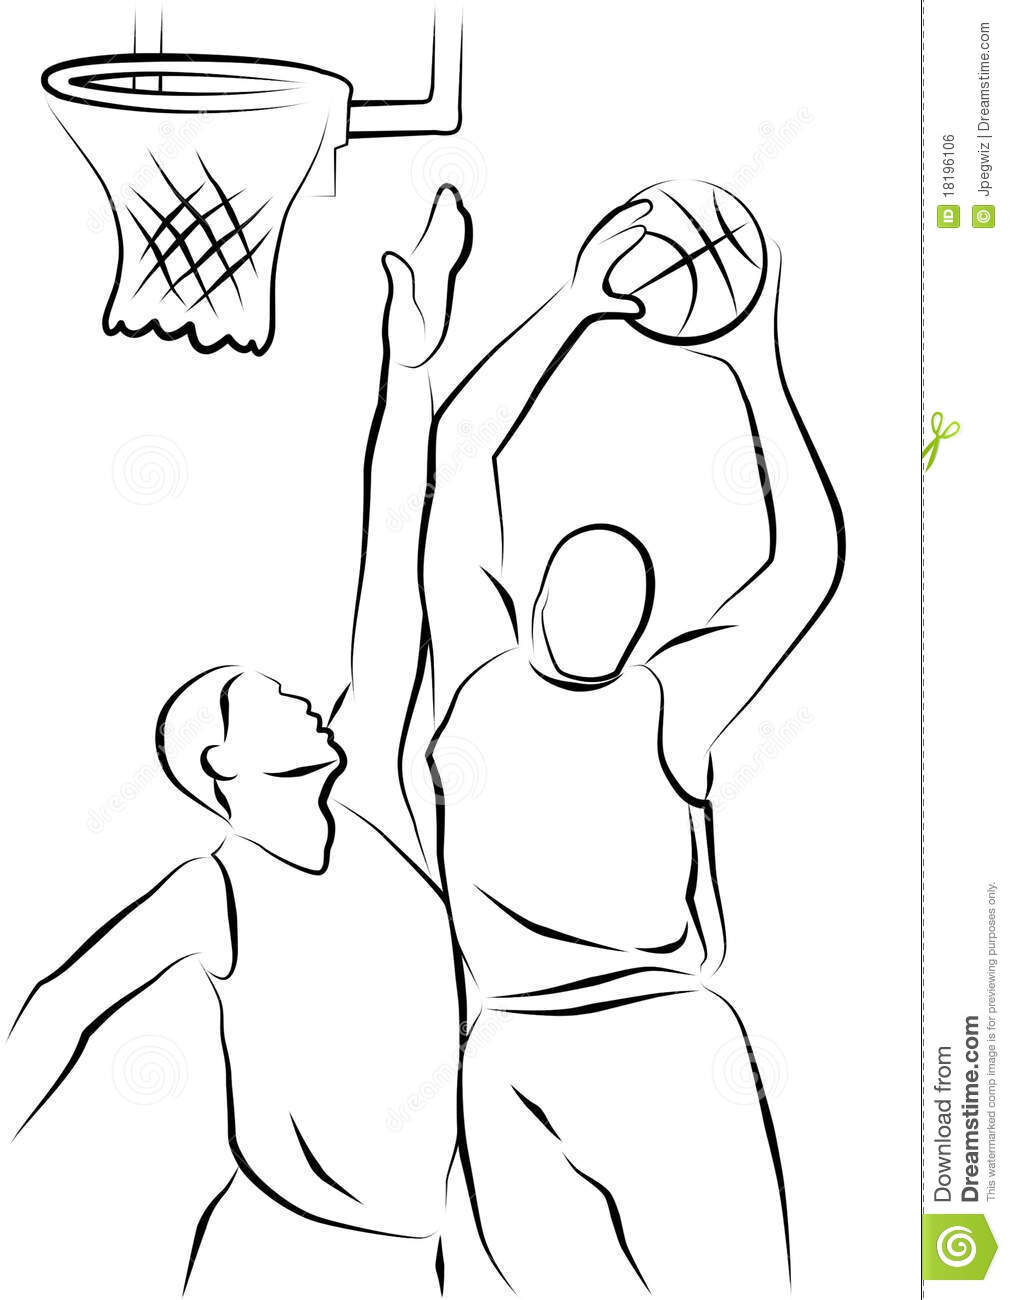 basketball-players-18196106.jpg